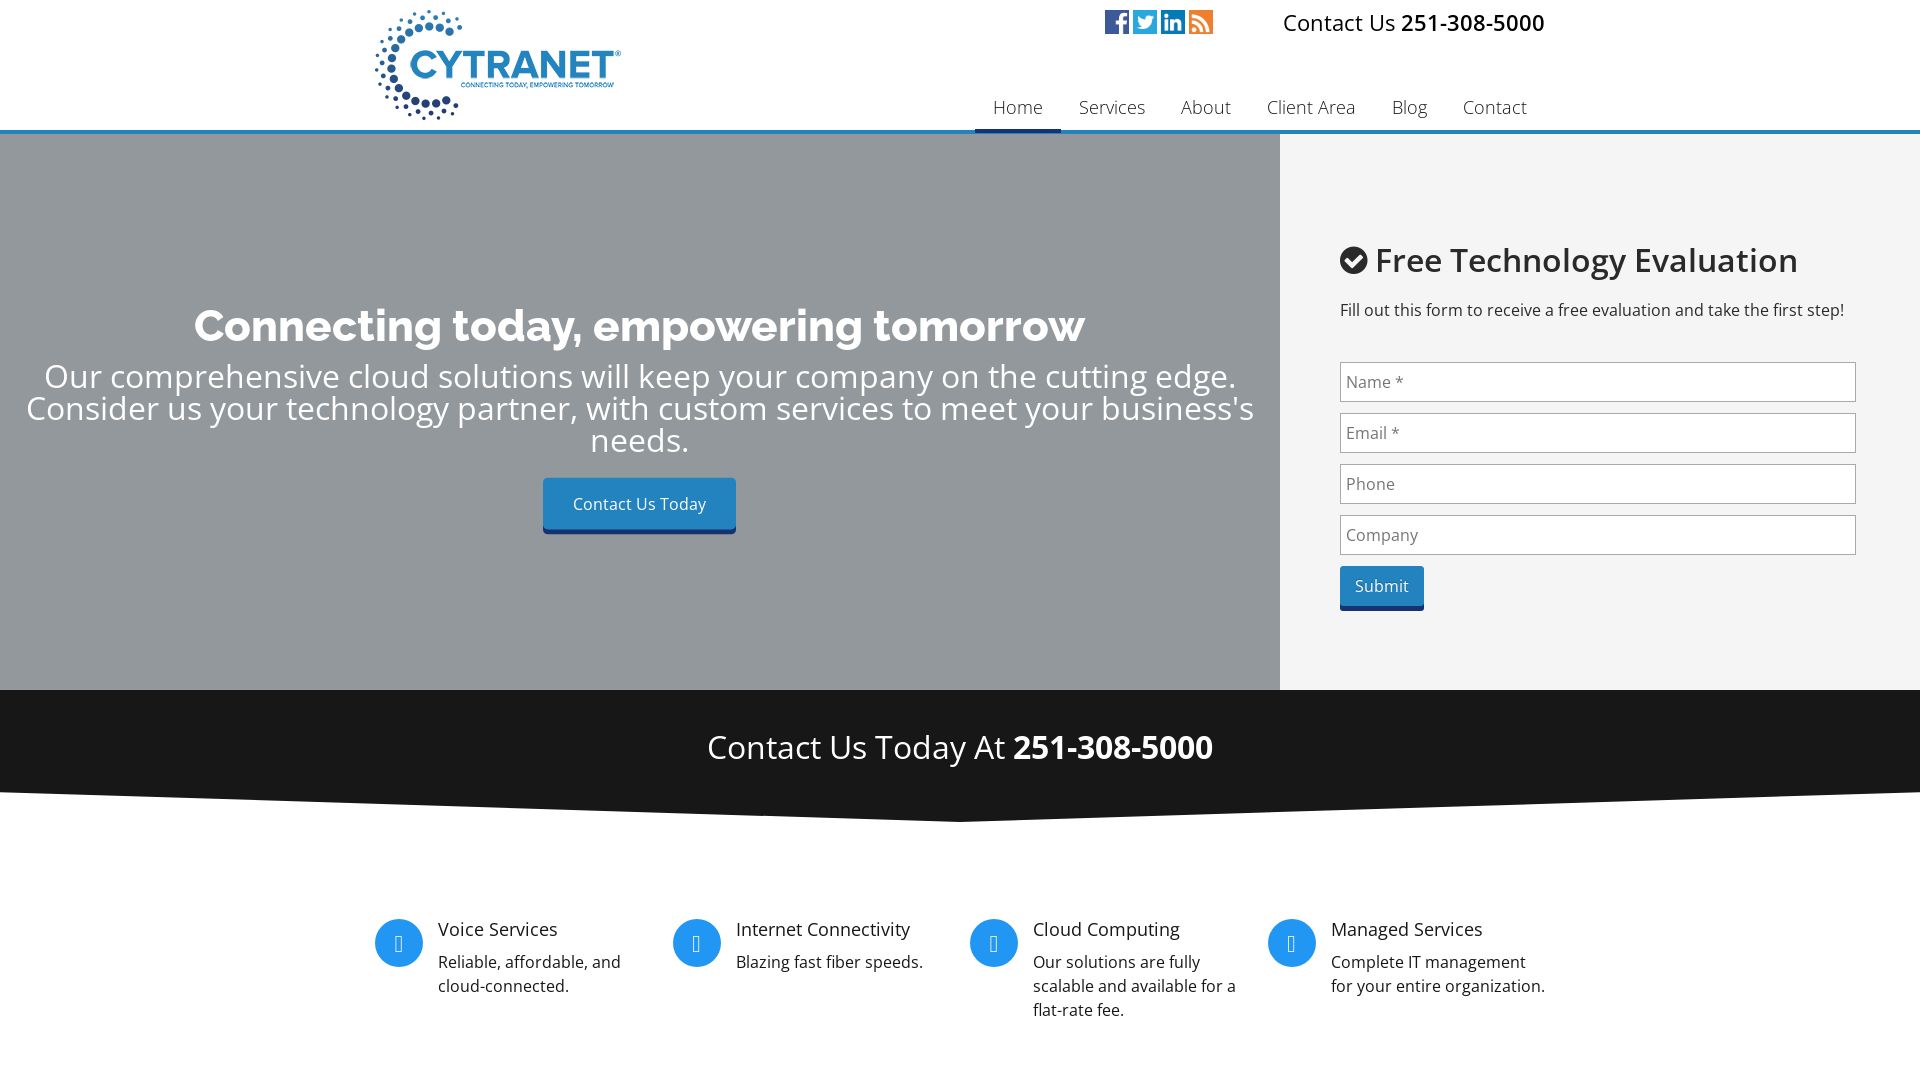 网站状态 cytranet.com 是  在线的